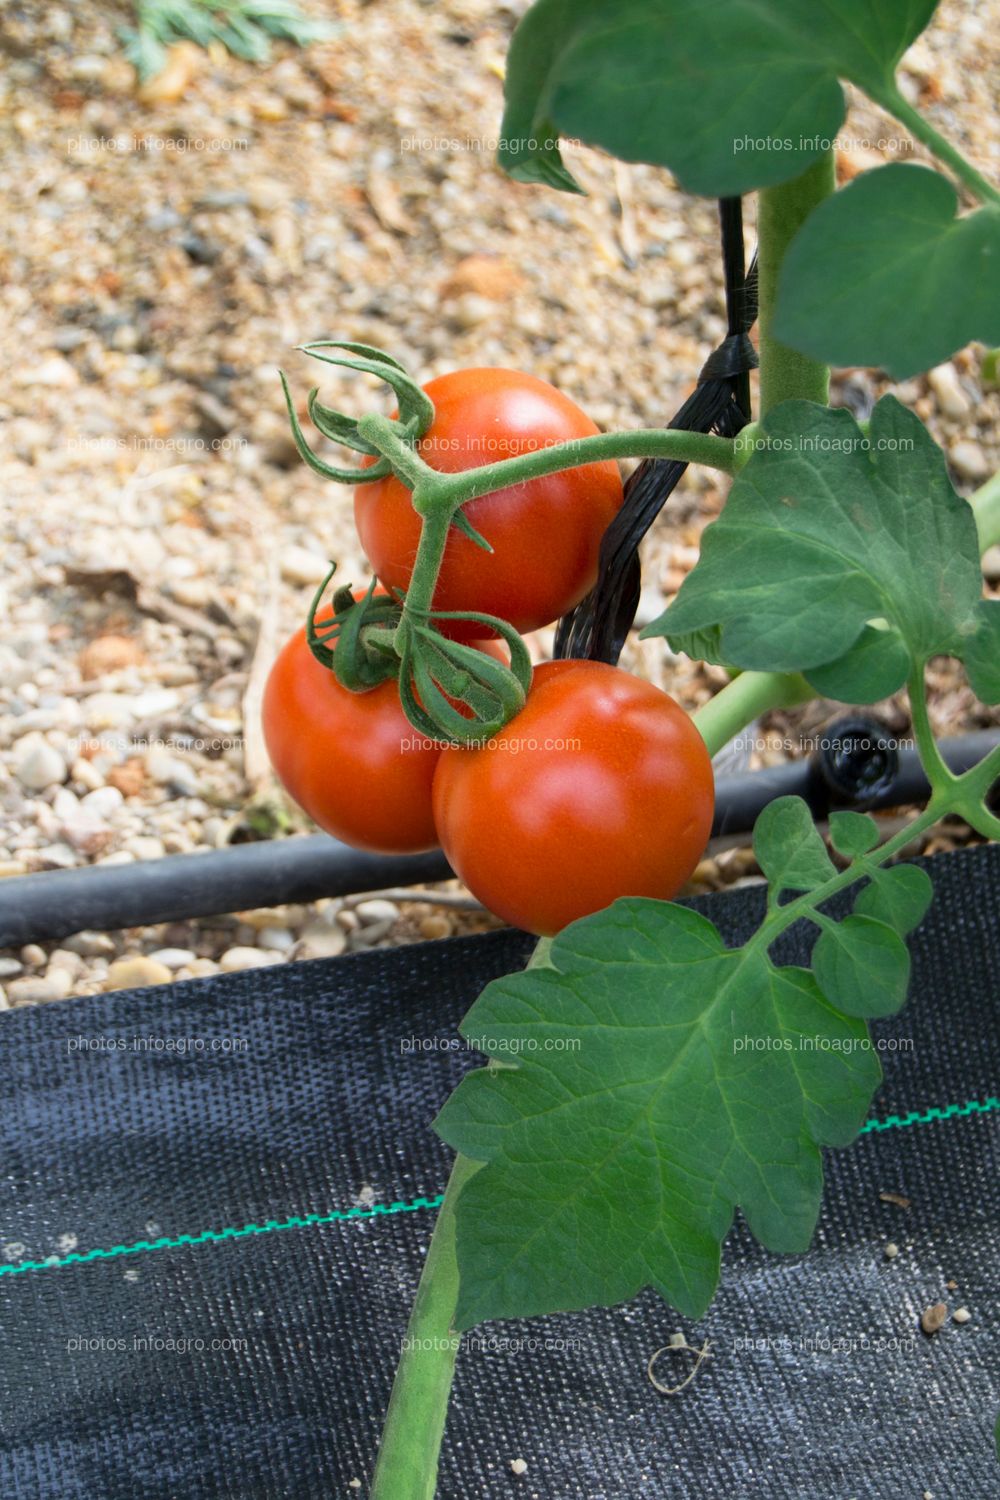 Planta perenne de tomate